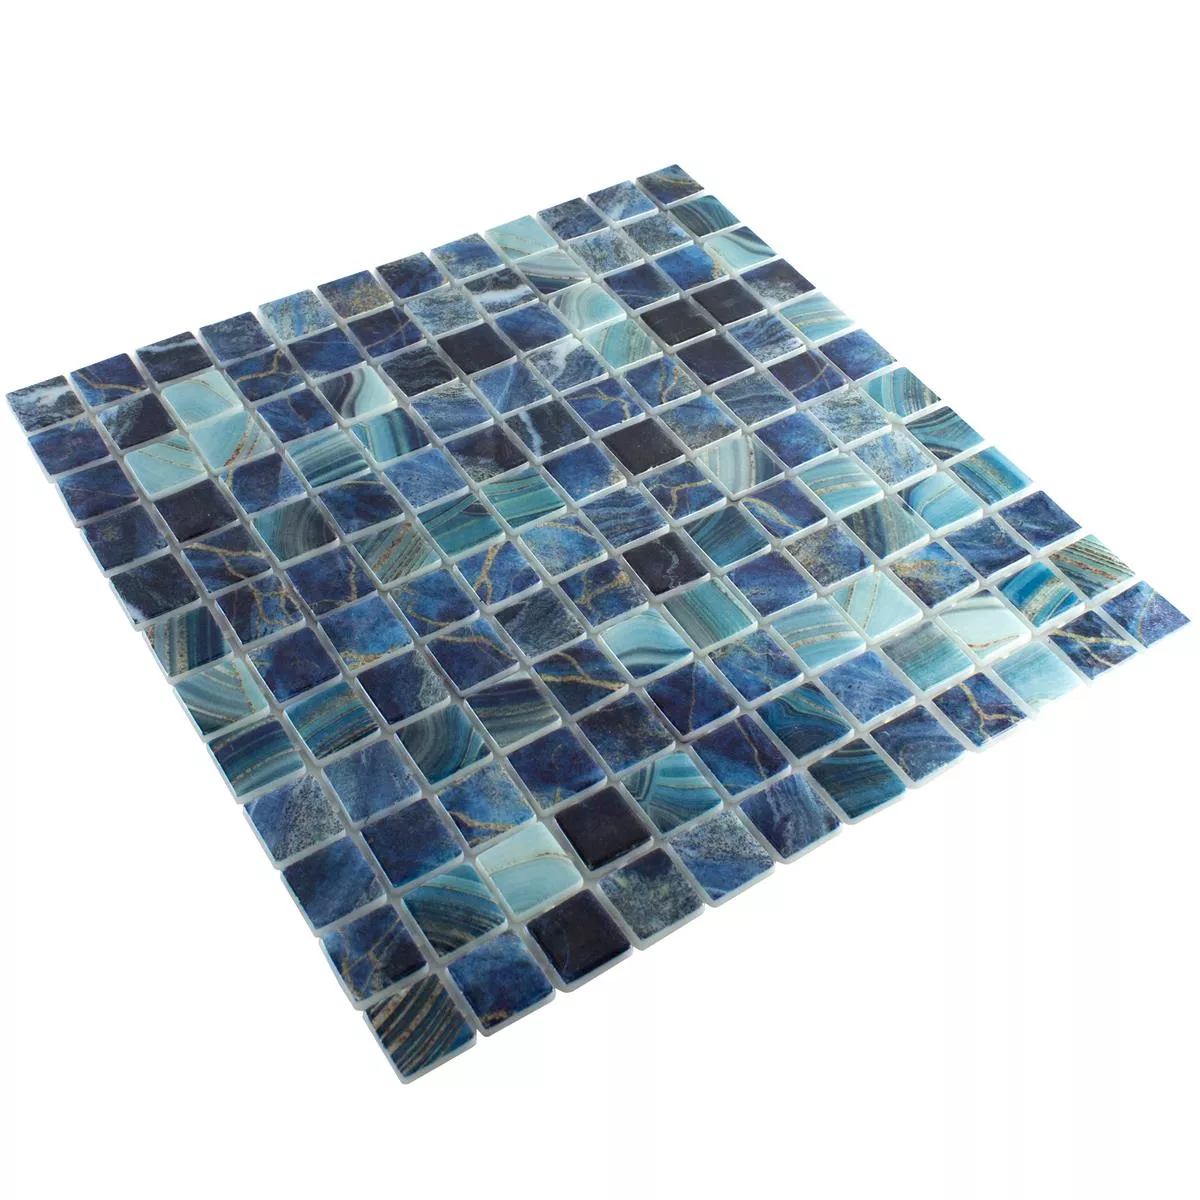 Svømmebassengmosaikk I Glass Baltic Blå Turkis 25x25mm